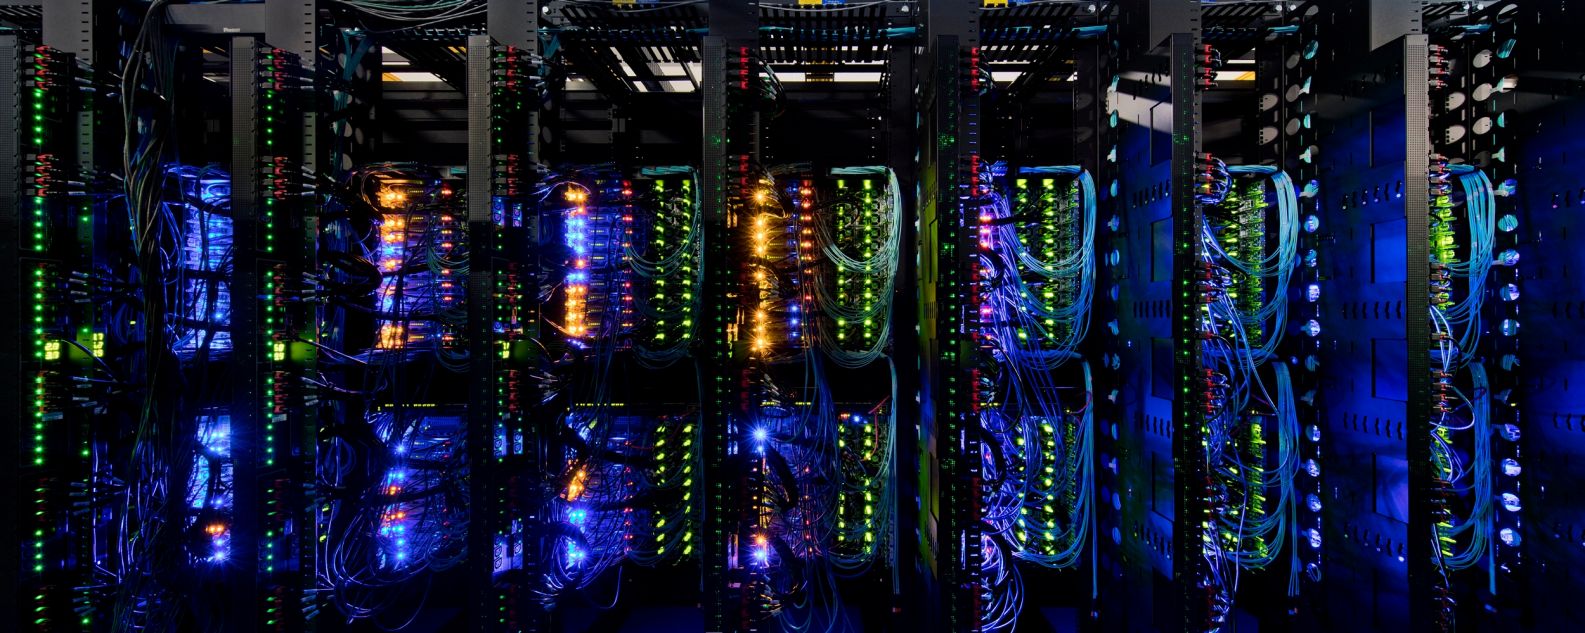 servidores de computadores conectados e sua conexão complexa